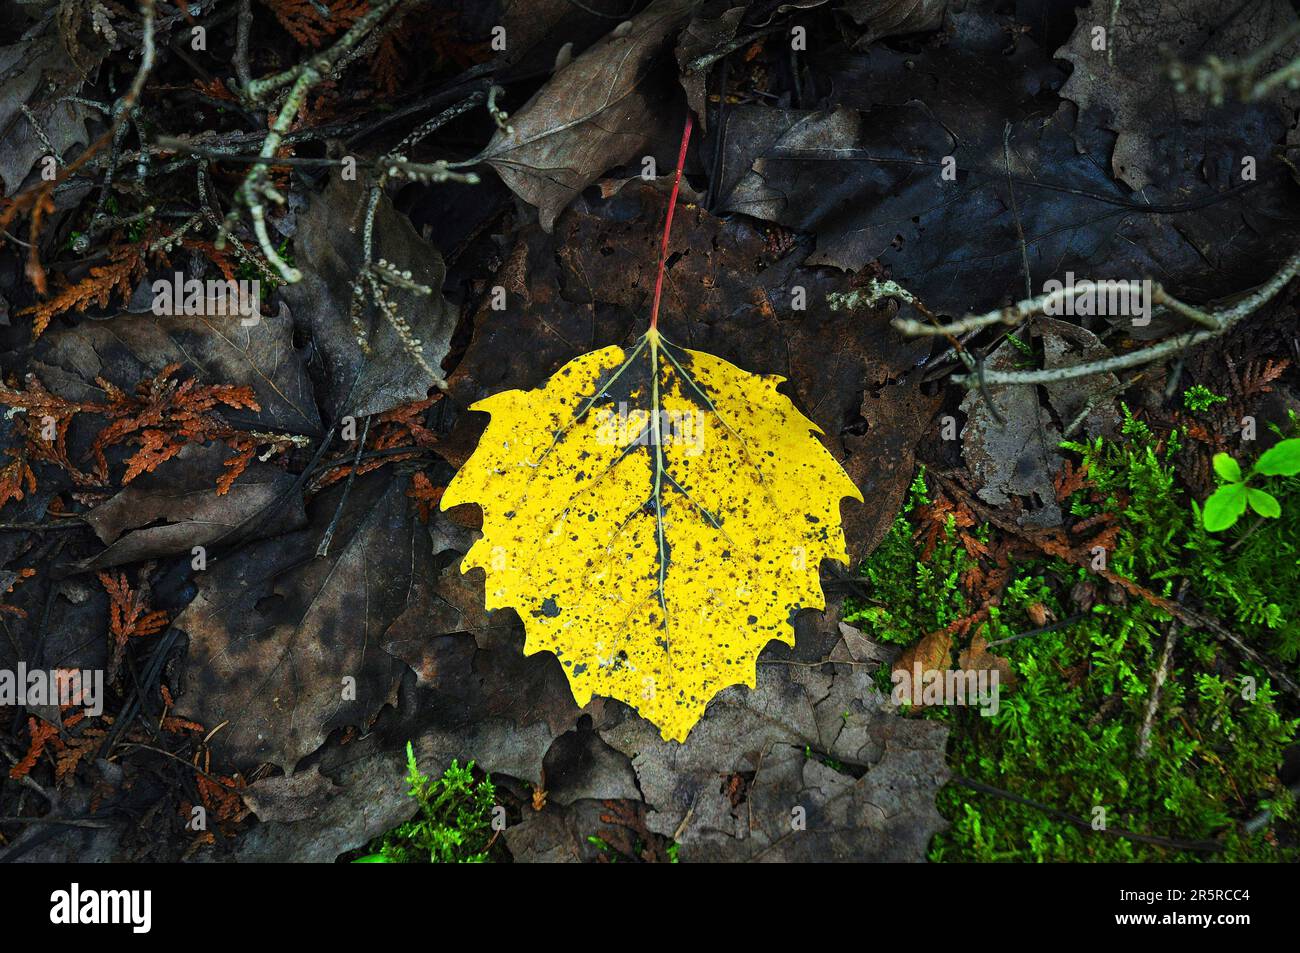 Yellow autumn aspen poplar leaf (populus tremula) resting on a dewy mossy leafy debris back ground Stock Photo